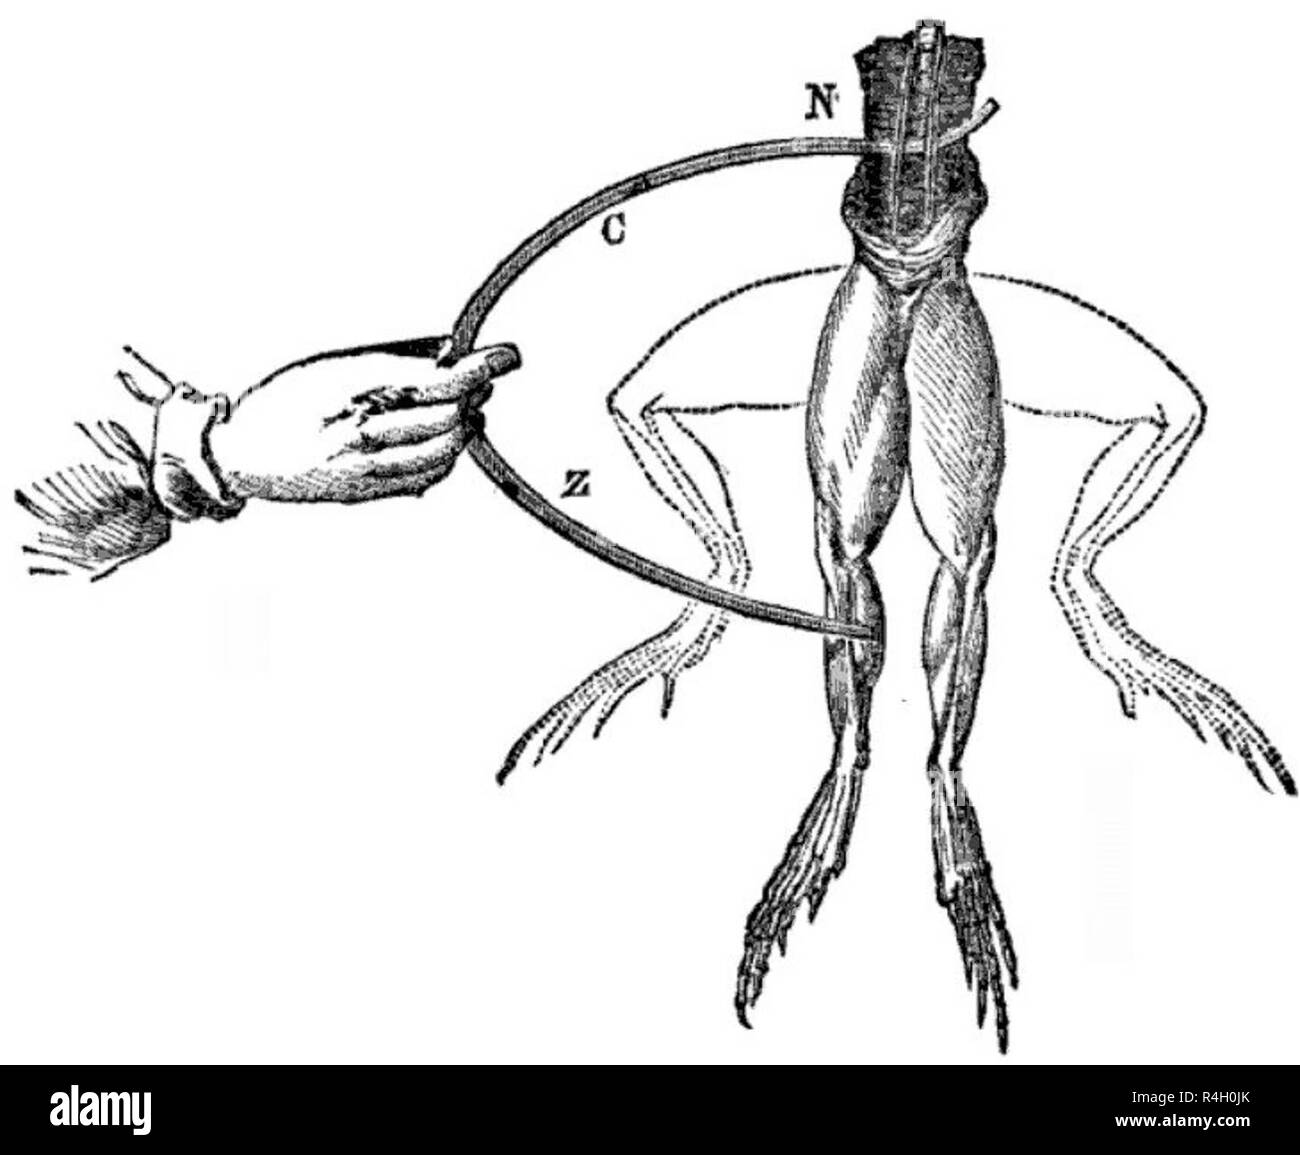 Découvrez le réseau des électrodes une grenouille, et les jambes en secousse vers le haut Banque D'Images